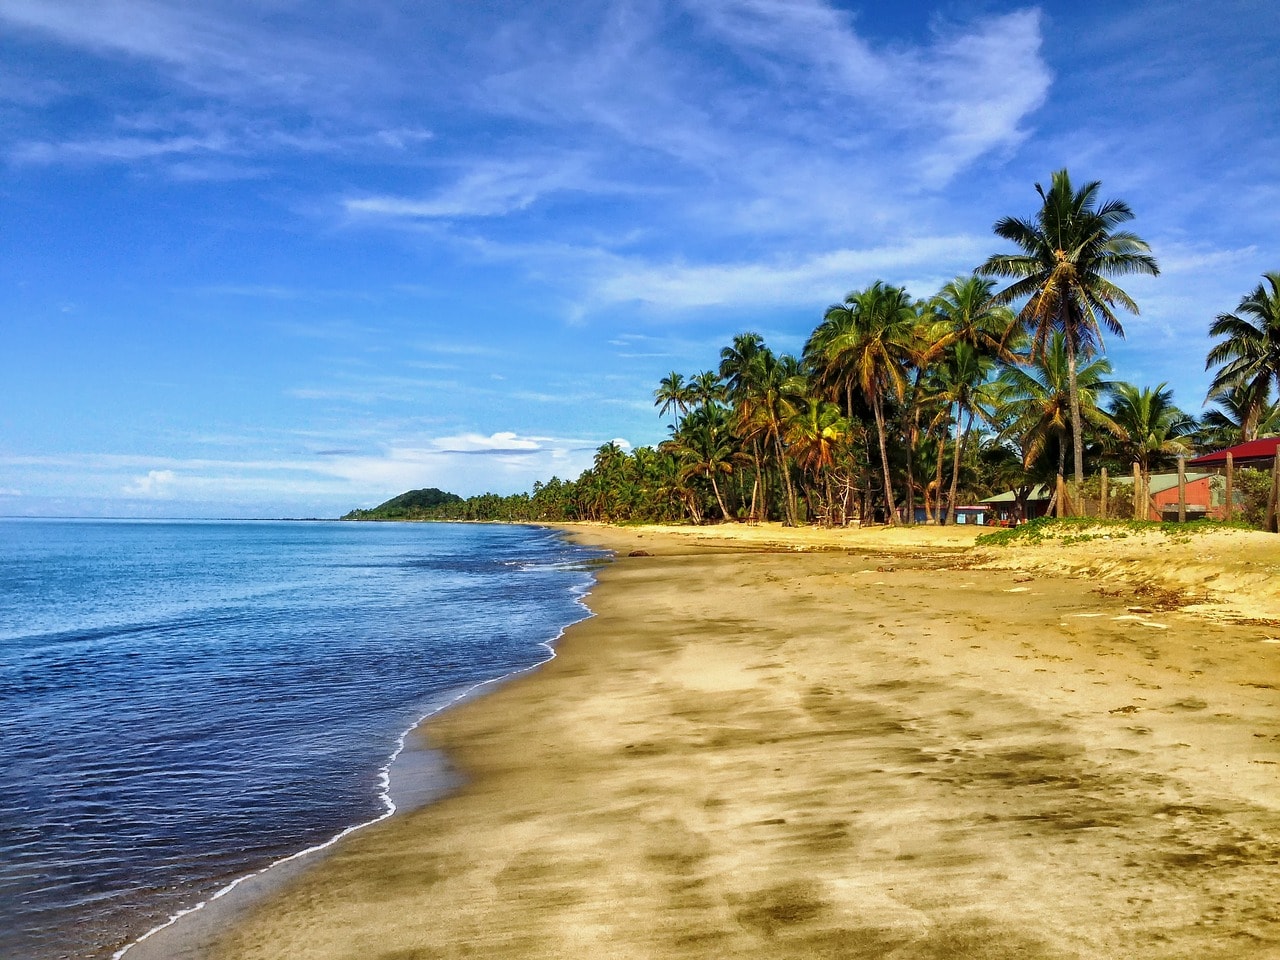 Un vol Fidji pas cher avec Algofly illustré par des palmiers et une plage de sable jaune sur une mer bleue intense.